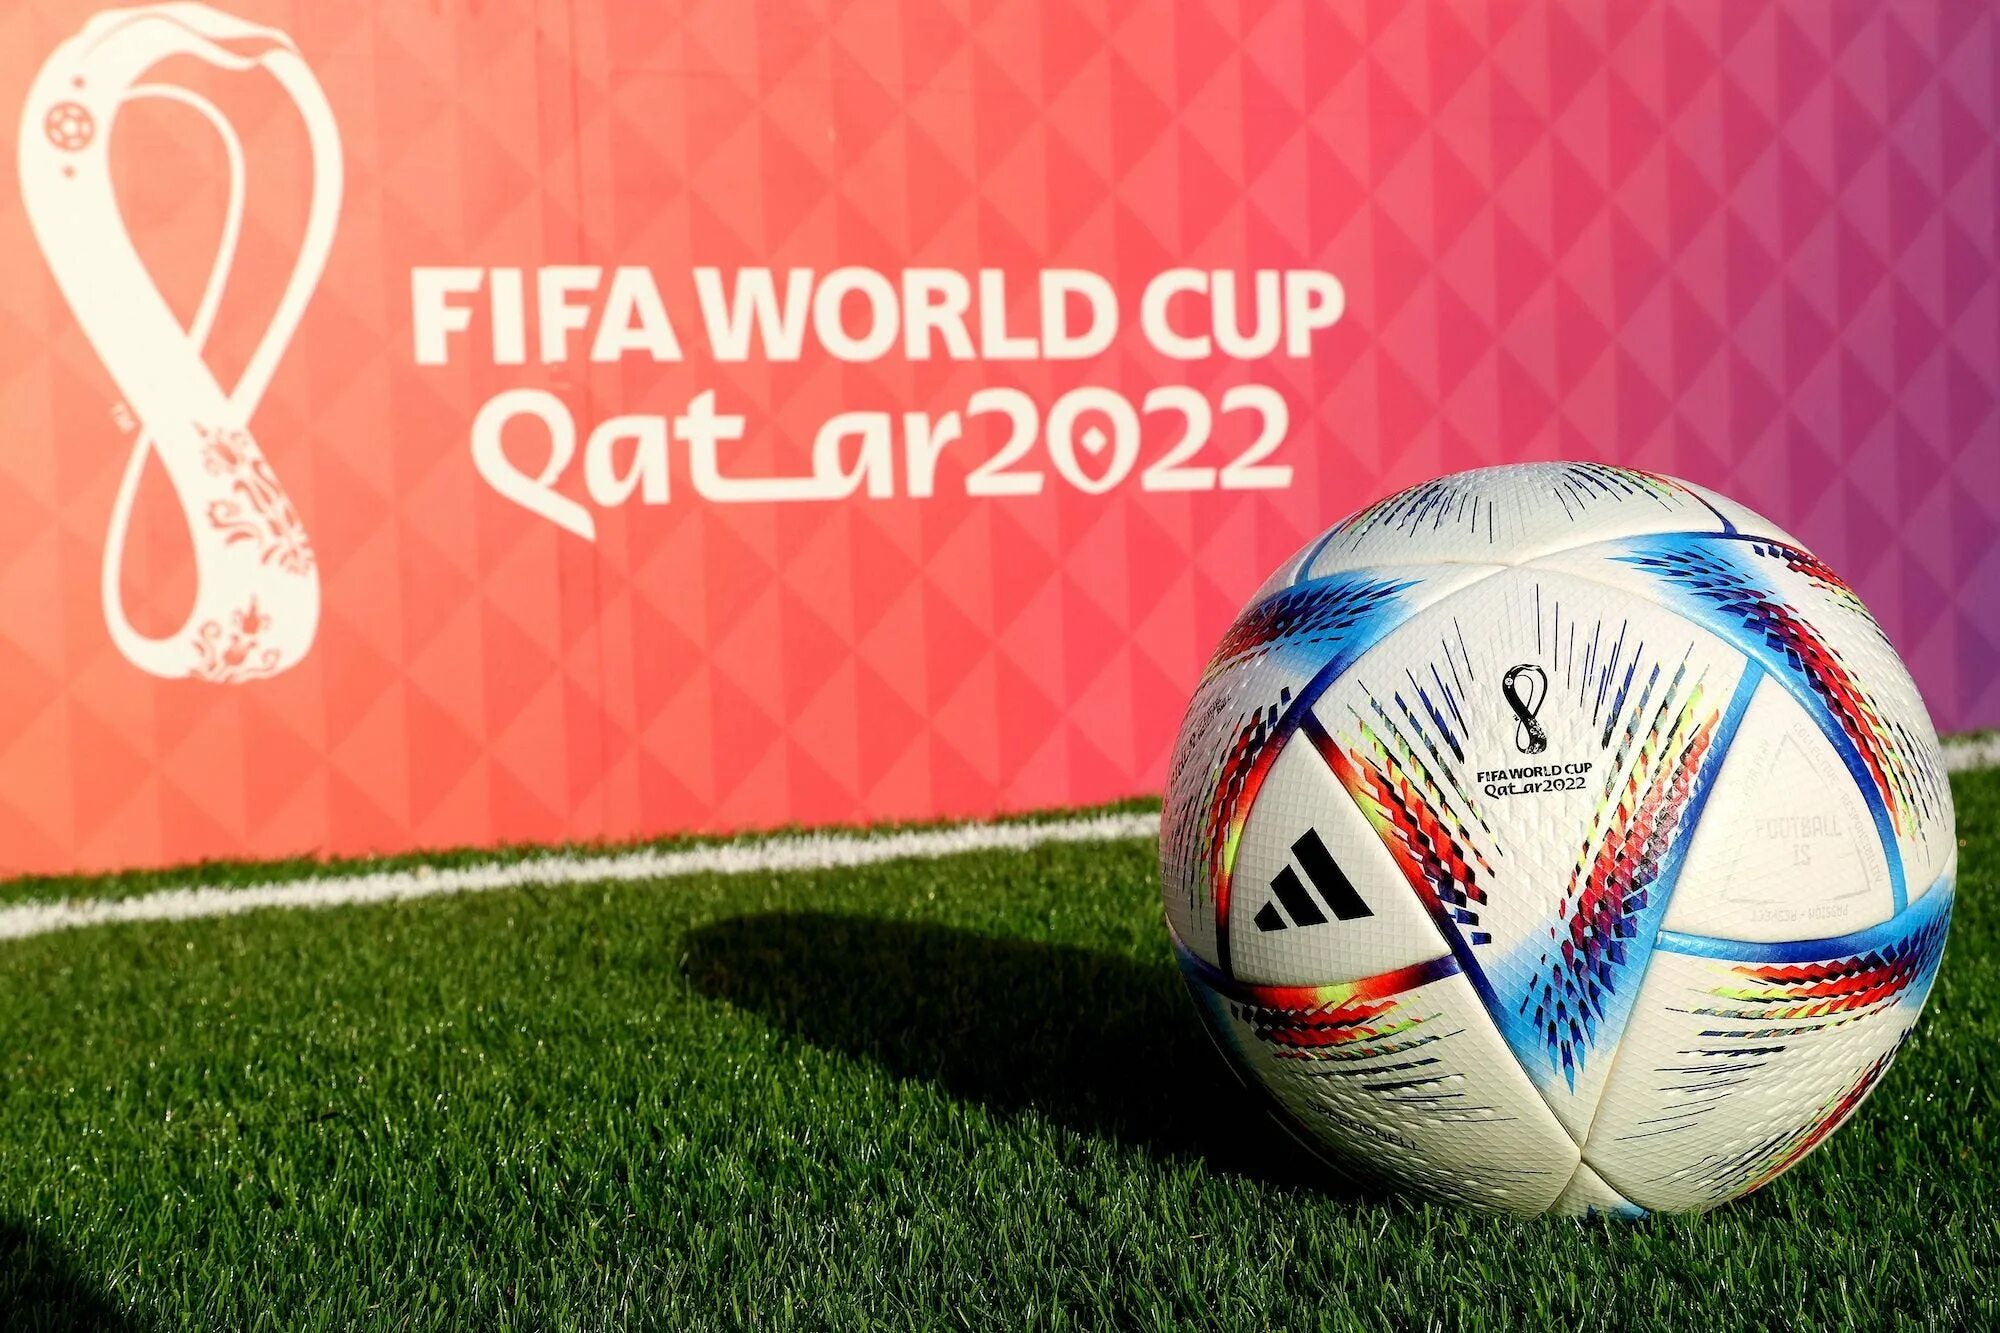 Мяч ЧМ 22 Катар. Мяч адидас ЧМ 2022. Qatar World Cup 2022 мяч. ФИФА ворлд кап 2022 Катар чемпион. Fifa qatar